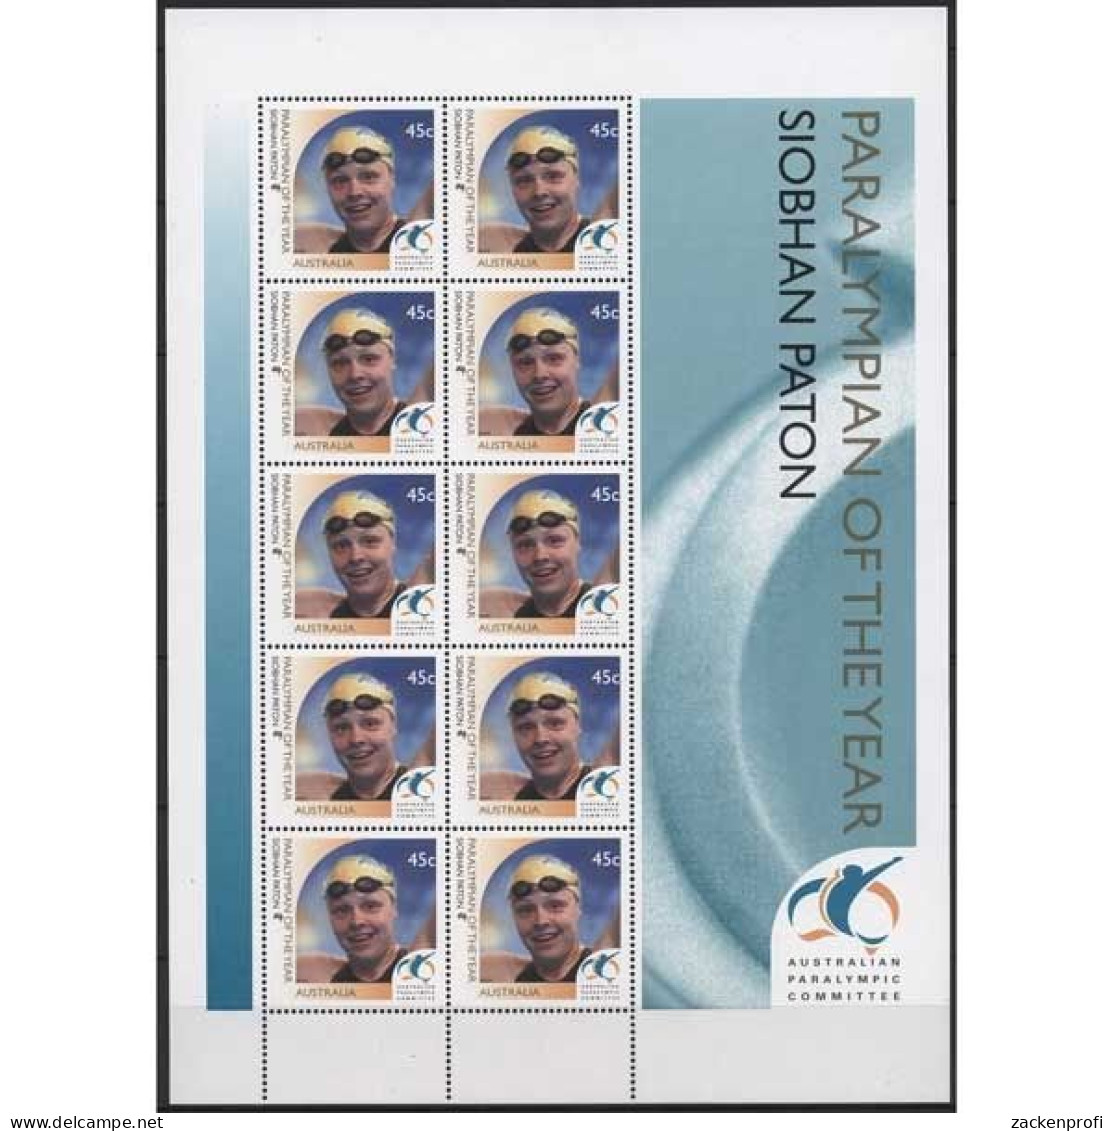 Australien 2000 Paralympische Sommerspiele Sydney 2000 K Postfrisch (SG25144) - Blocks & Sheetlets